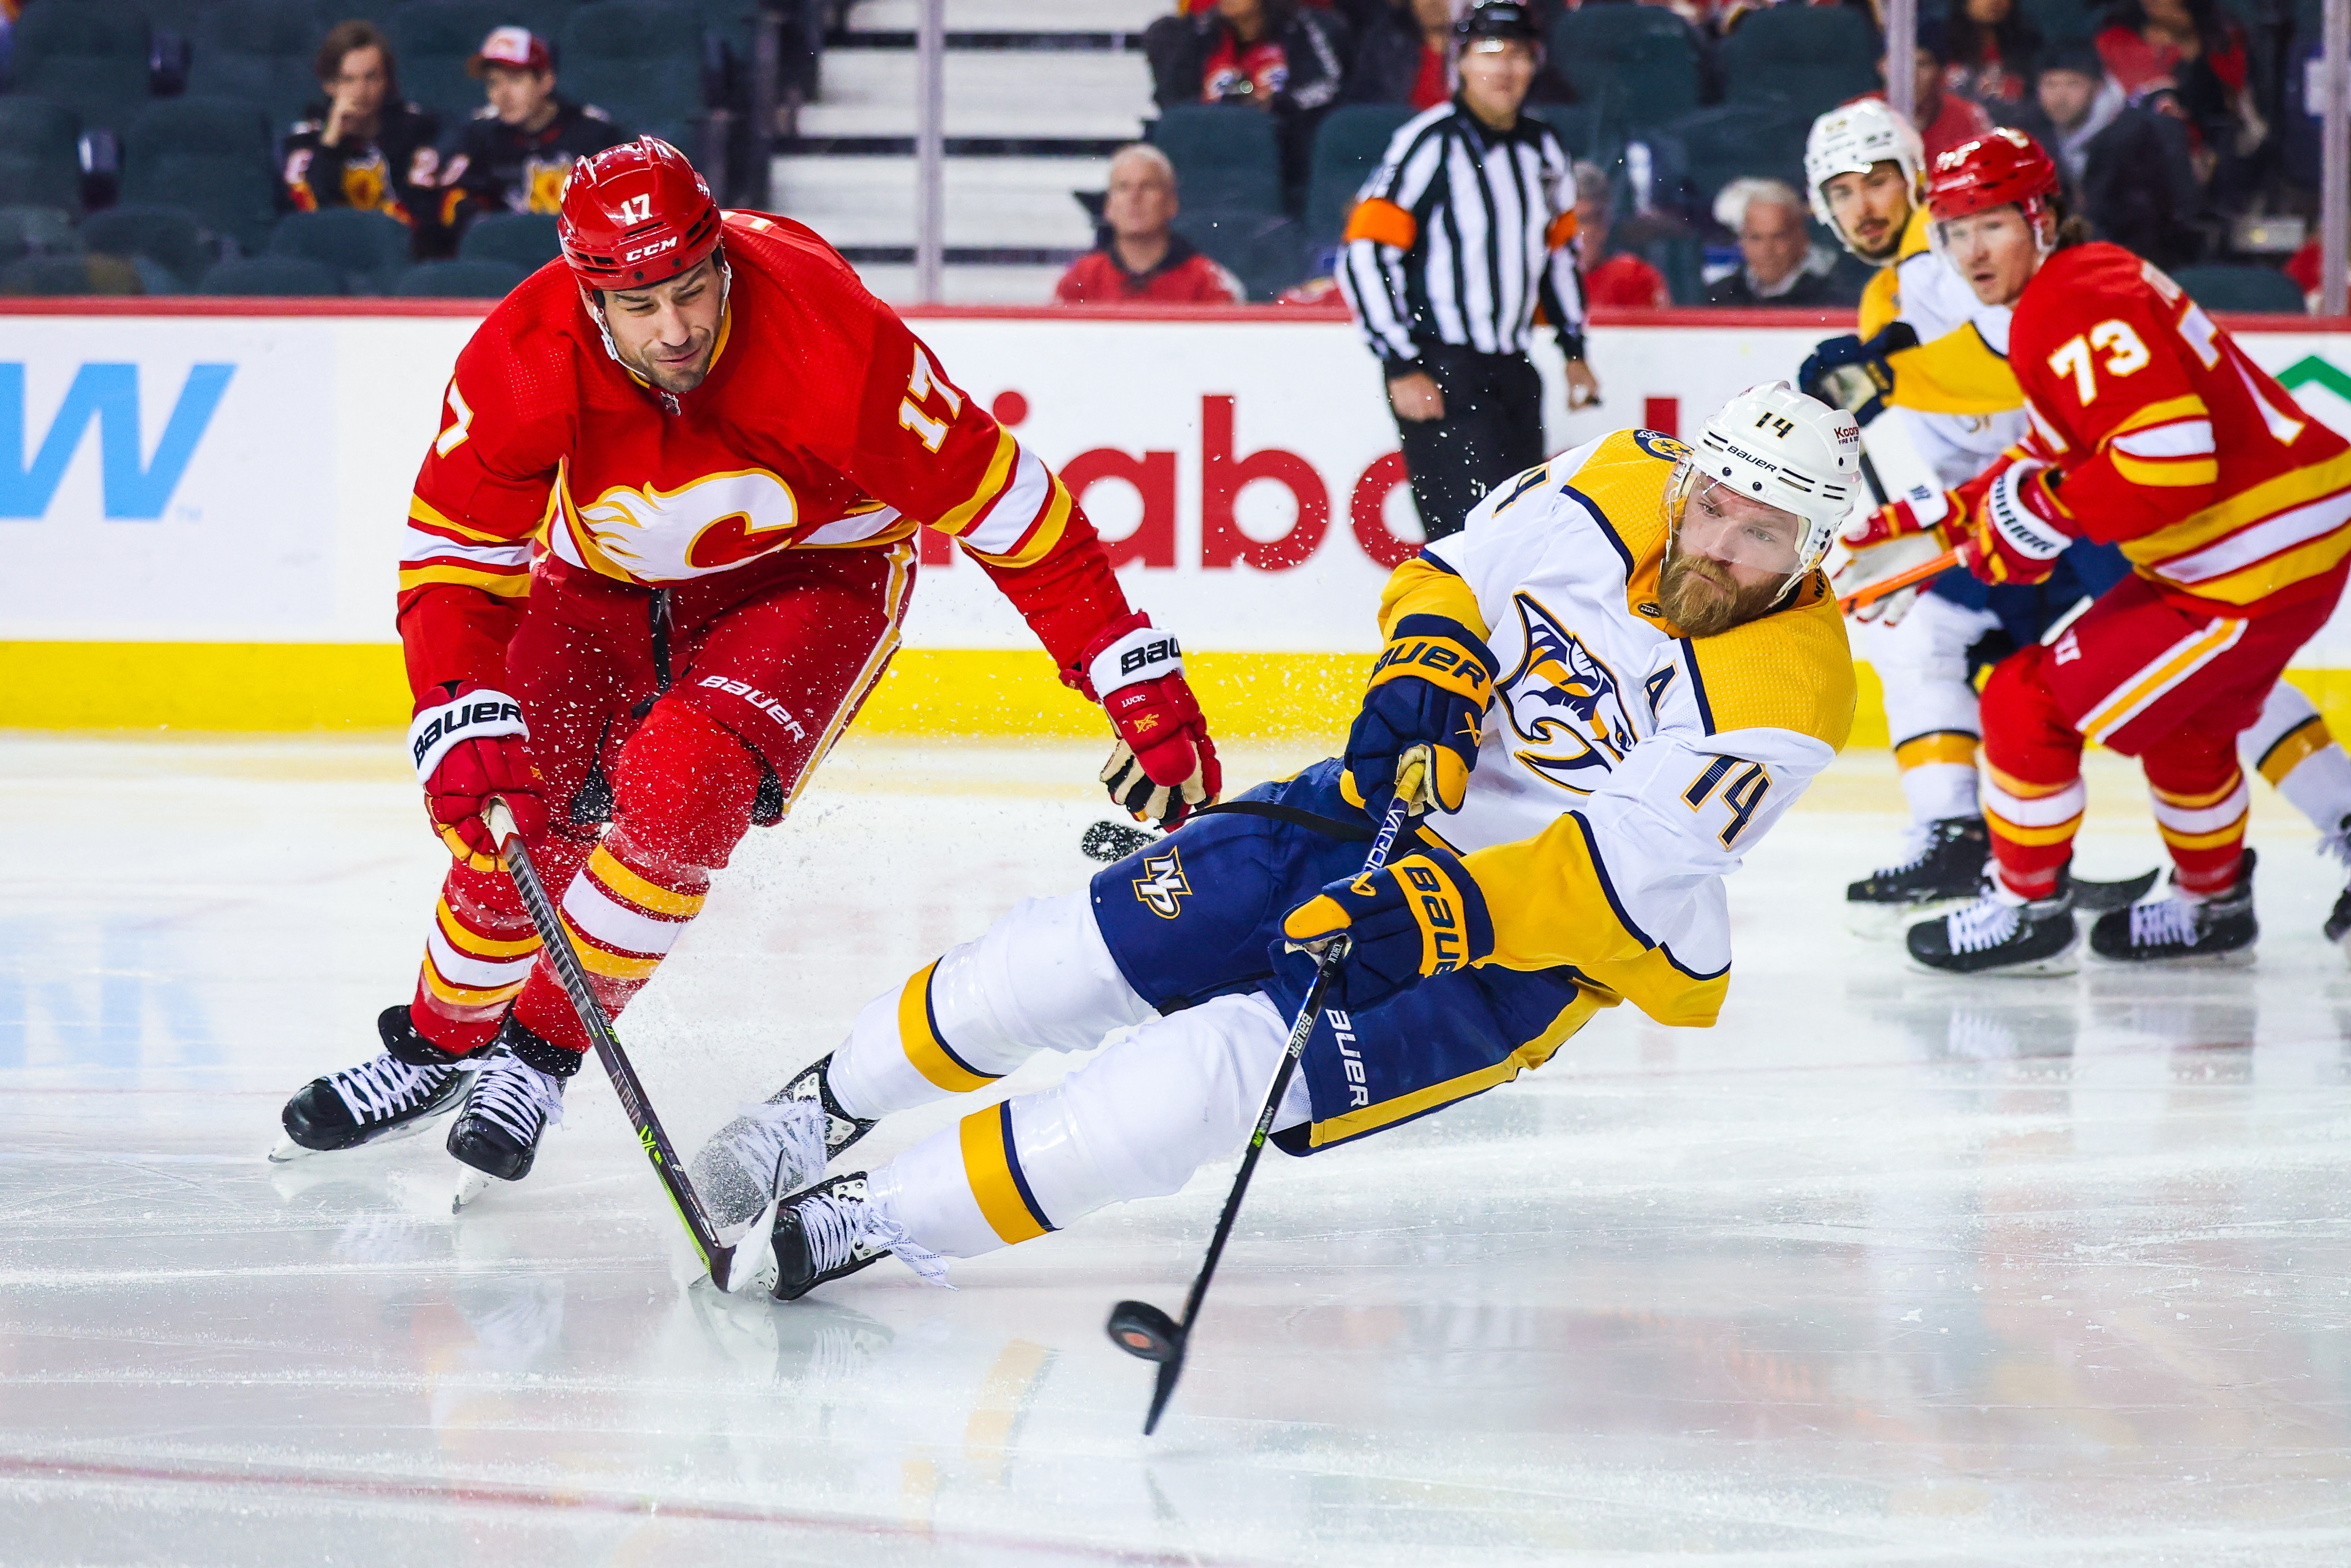 Charlie Coyle's shootout goal helps Bruins reach 60-win mark - ESPN